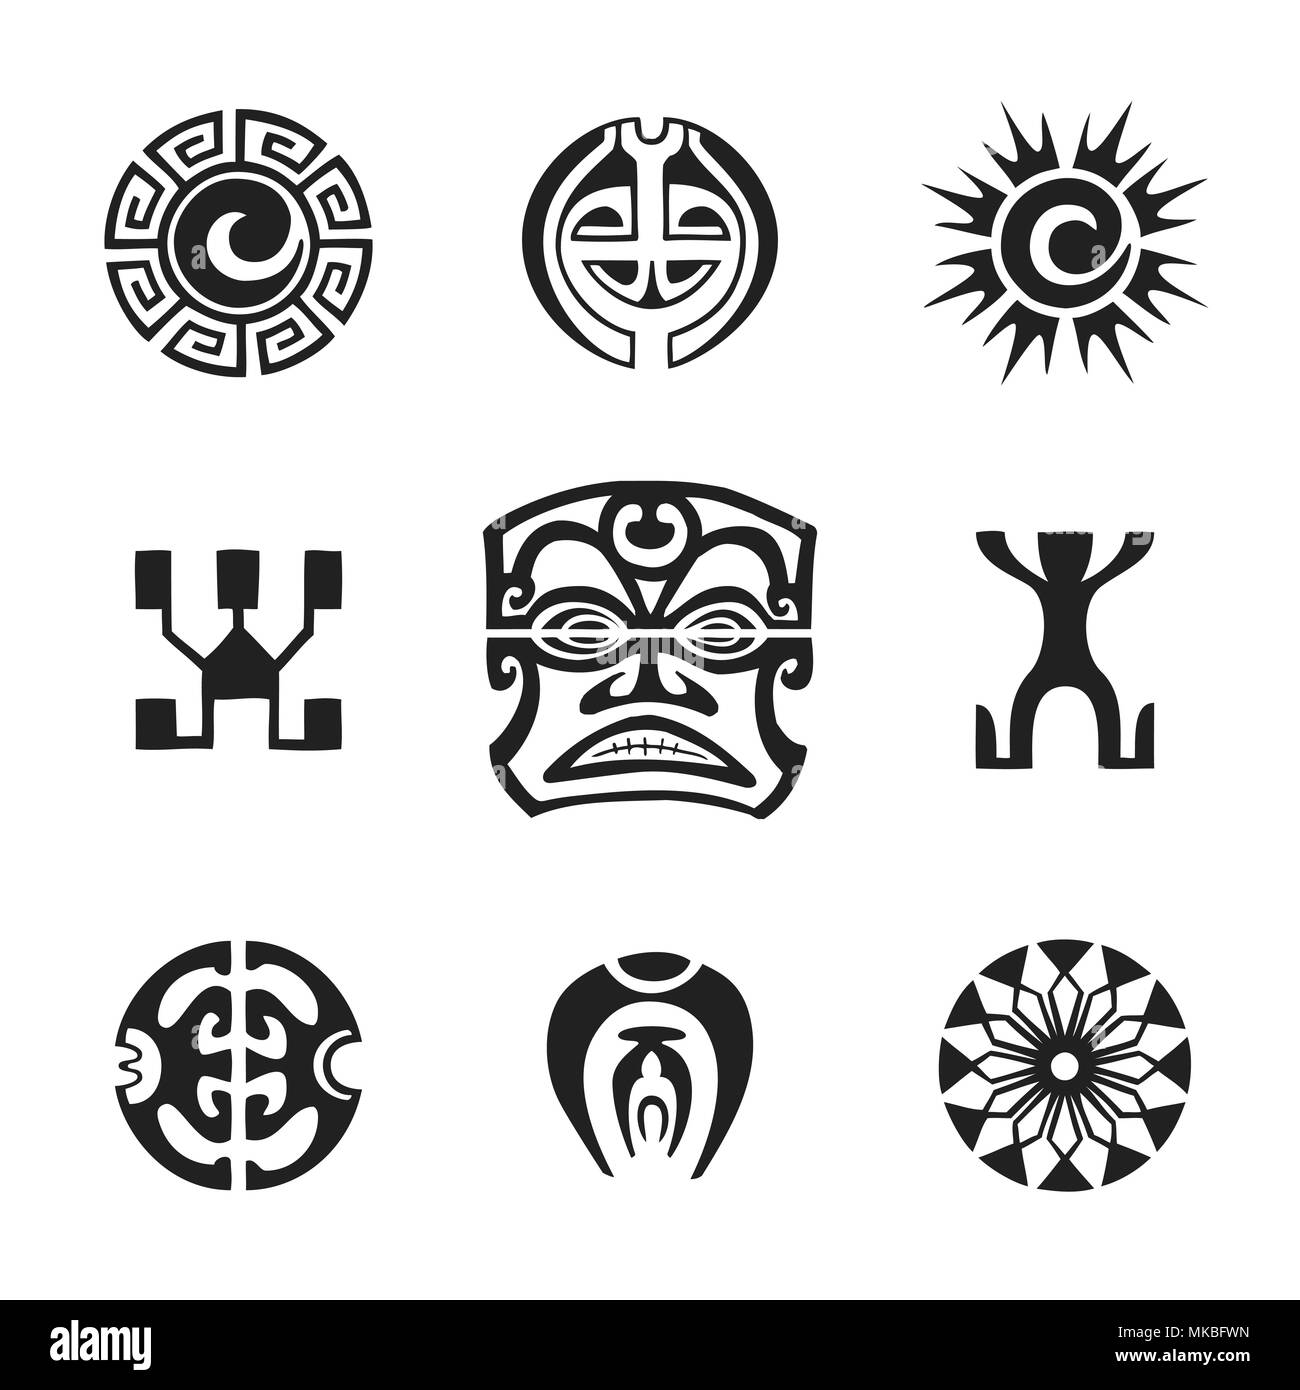 Vecteur d'encre monochrome noir indigènes à la main art populaire polynésien Tiki, symboles de soleil, Kautupa, Enata, l'œil qui voit tout, illustrations de fleurs whi isolés Illustration de Vecteur